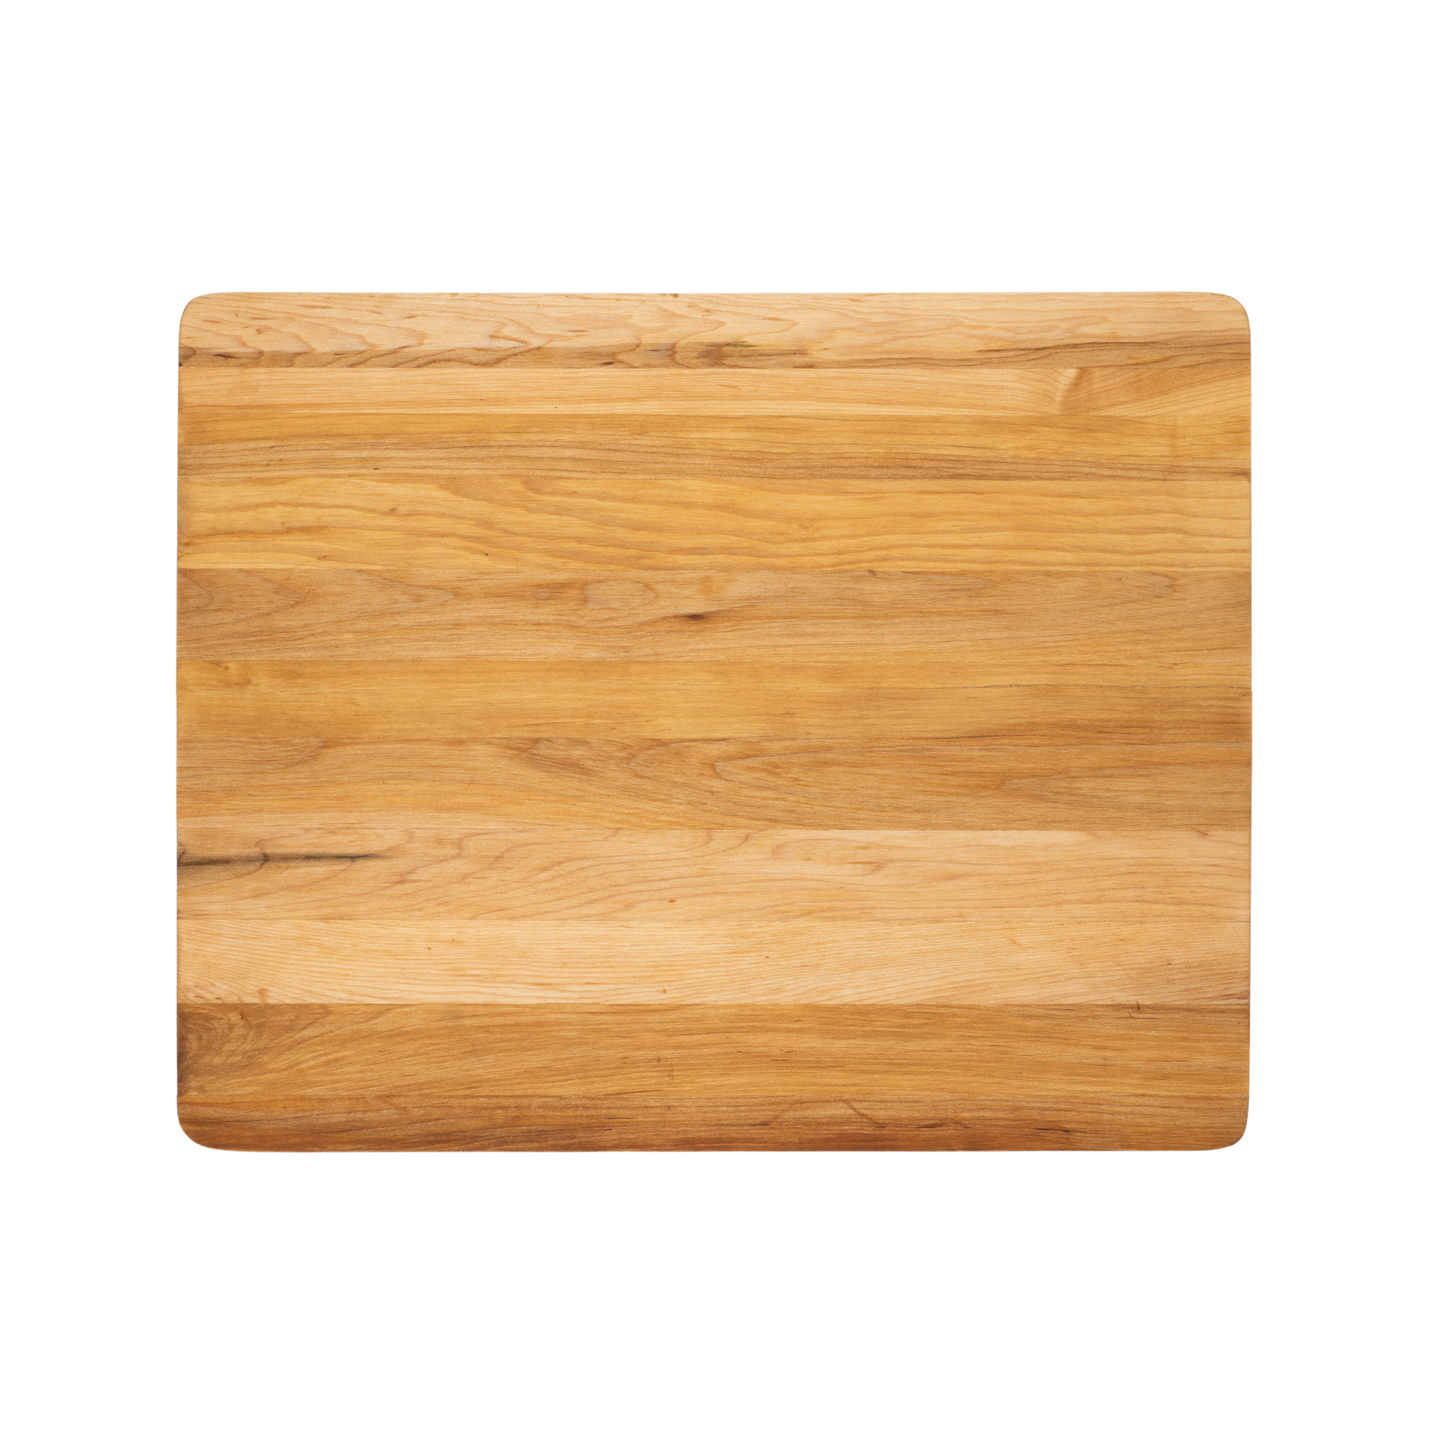 Utility Maple Cutting Board 20" x 16" x 0.75"